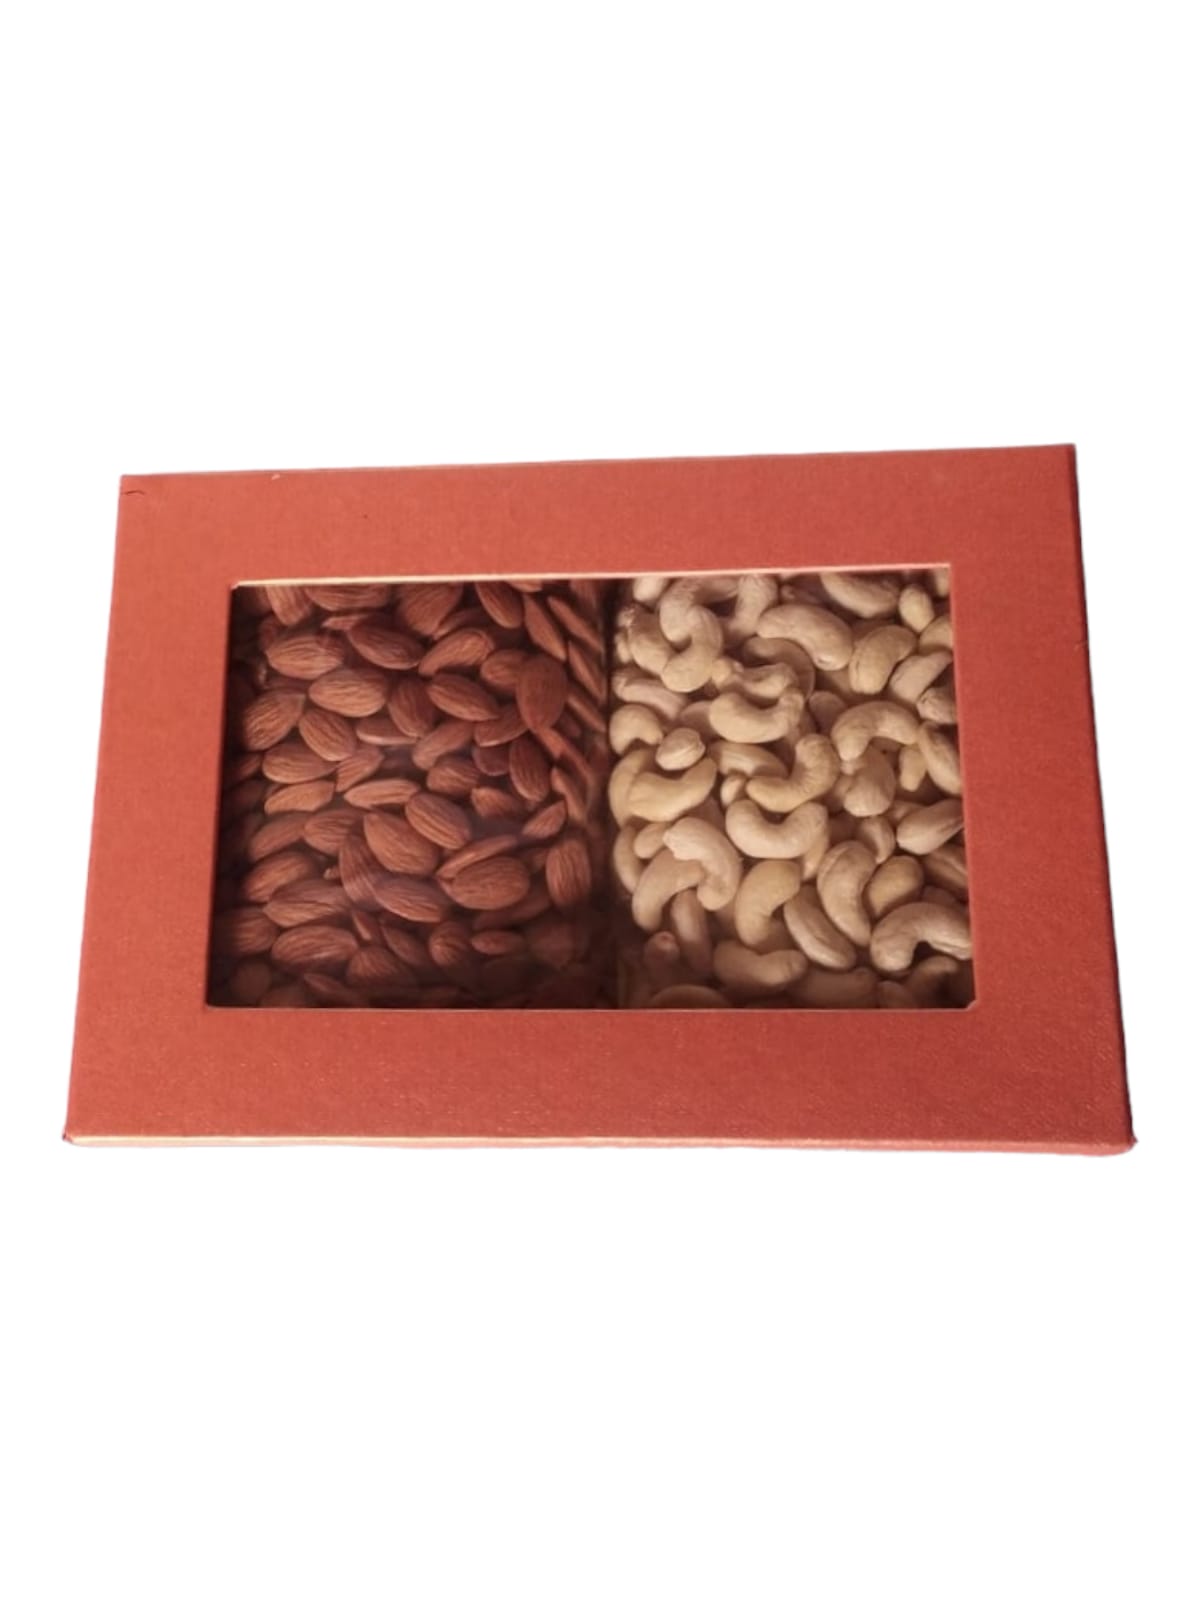 Dry Fruit Box For Diwali Festival | Official gift for diwali|Diwali Special Dry  Fruit box Combo| Festival gifts for your loved ones| Diwali gift hamper|  Gift hamper for diwali| dry fruit vombo